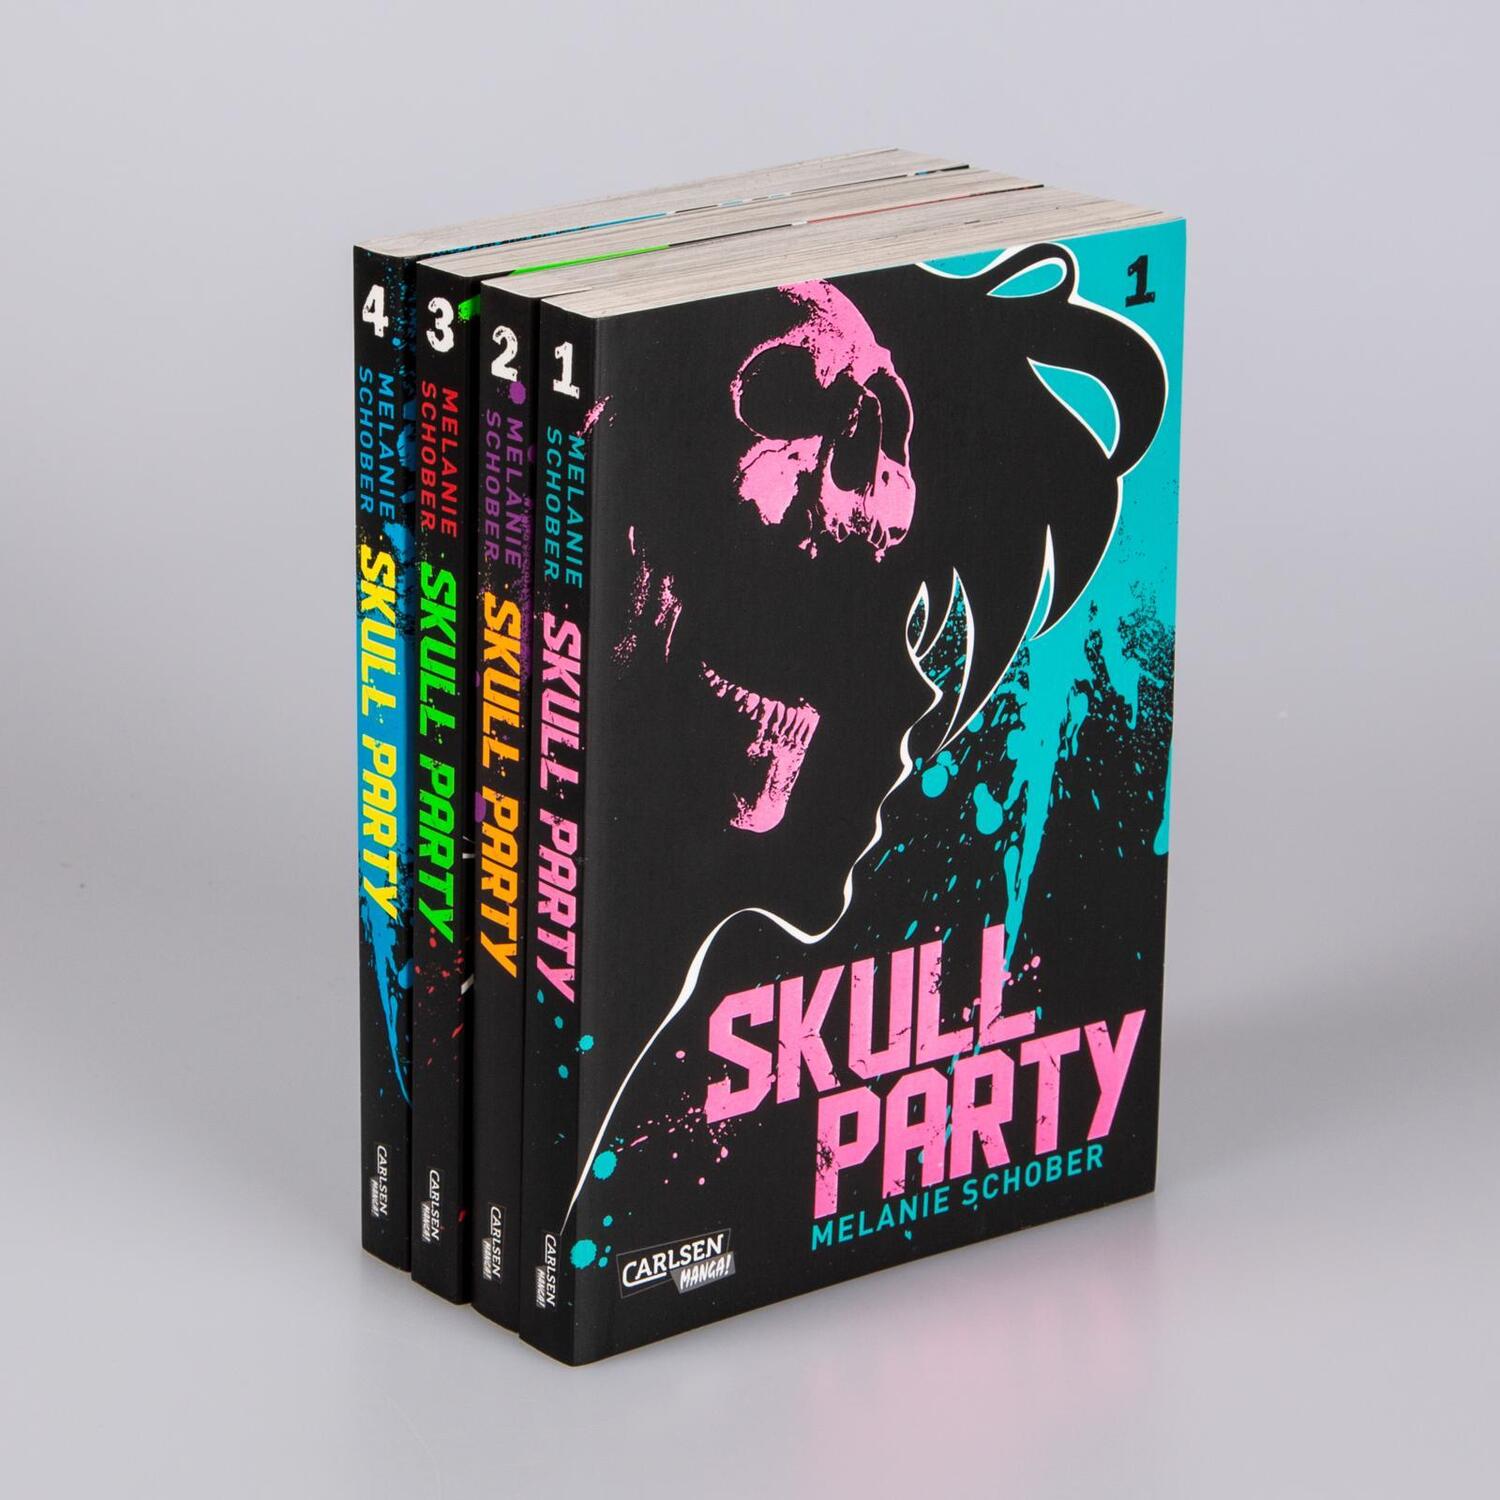 Bild: 9783551021182 | Skull Party Komplettpack 1-4 | Melanie Schober | Box | Skull Party